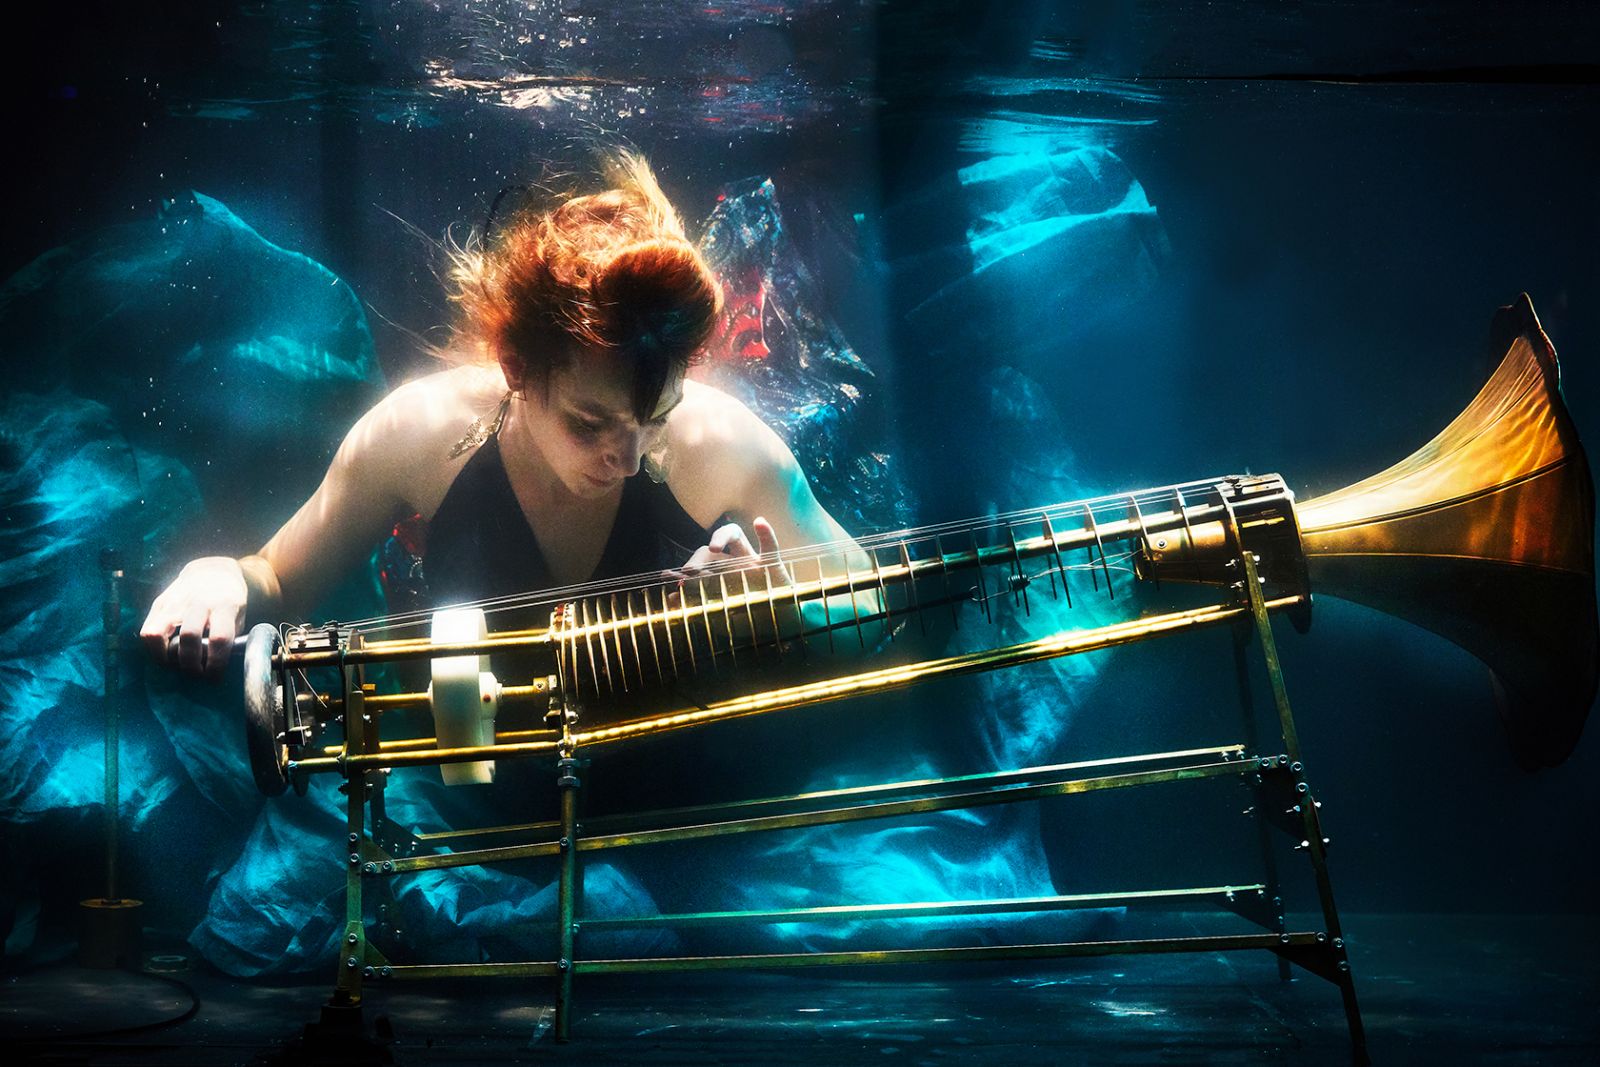 AquaSonic er en kompromisløs opdagelsesrejse under vand</br>Between Music spiller undervandskoncerten AquaSonic.</br>Foto: Ambra Vernuccio